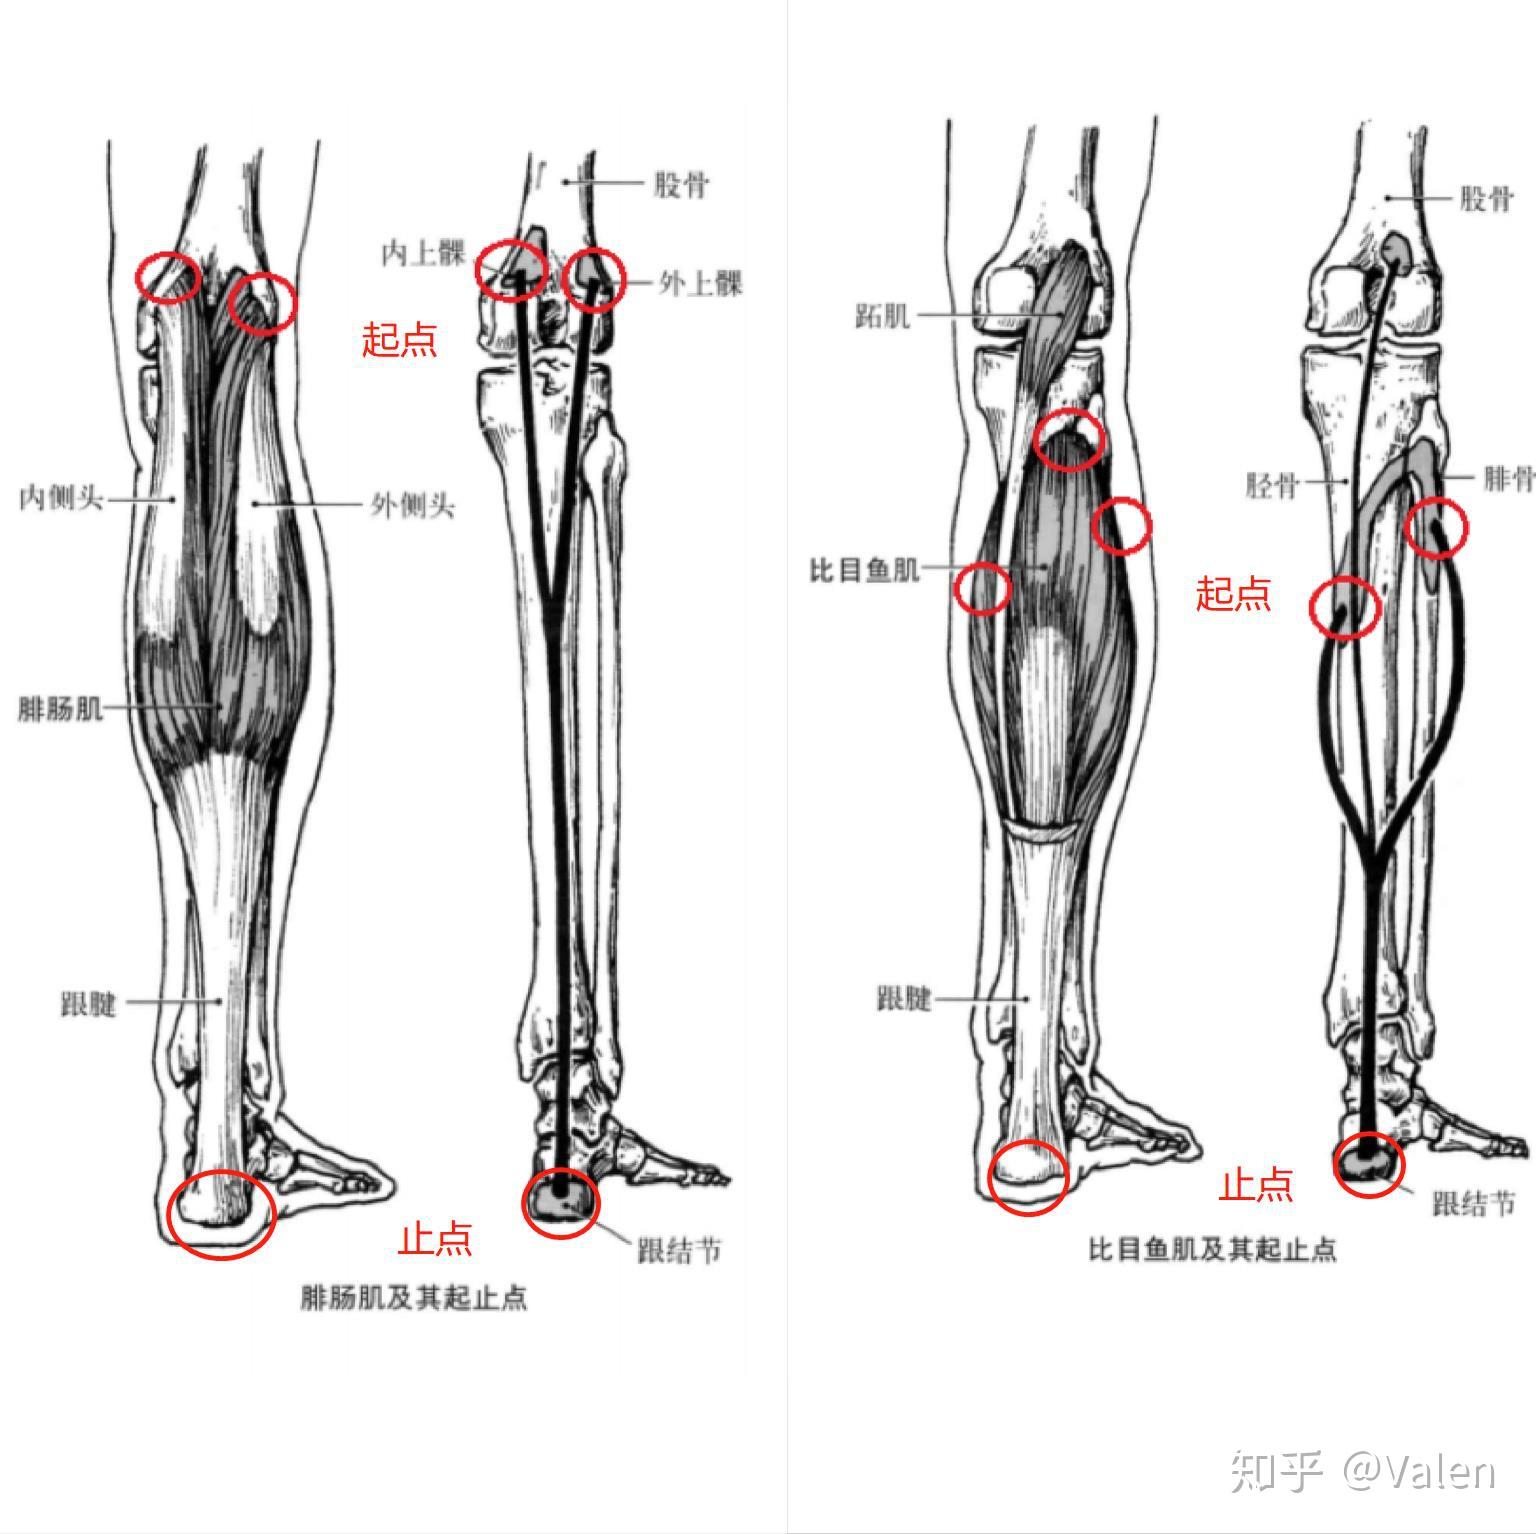 【腿型分析】教你判断O型腿、X型腿、和XO型腿的区别 - 知乎